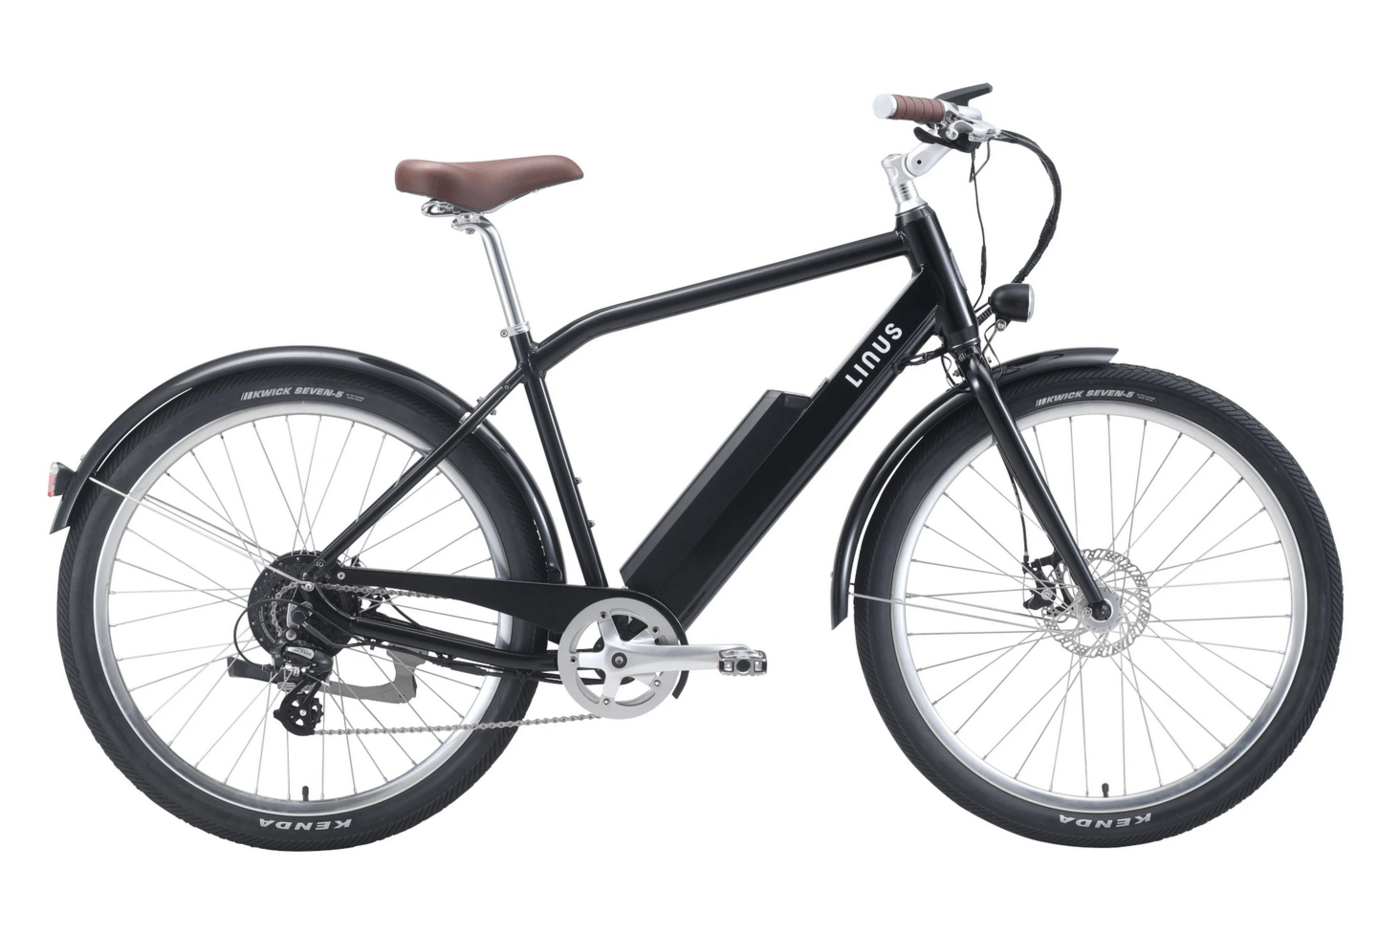 imagen 2 de Eros 500, la bicicleta Linus Venice que te podría traer Papá Noel.